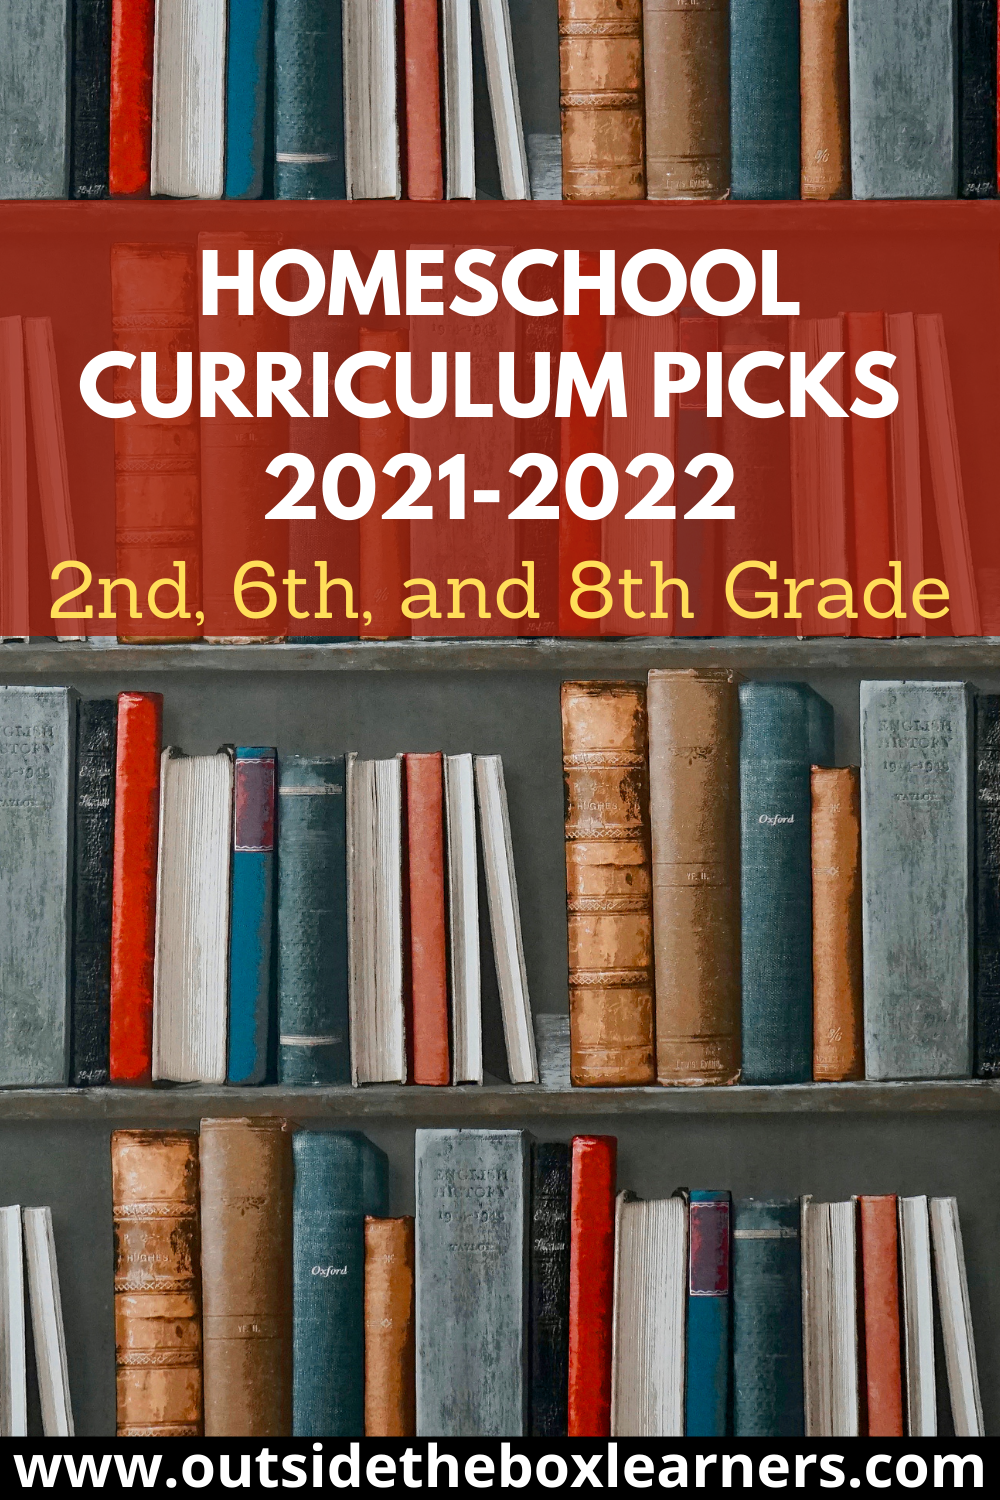 Homeschool Curriculum Picks for 2021-2022